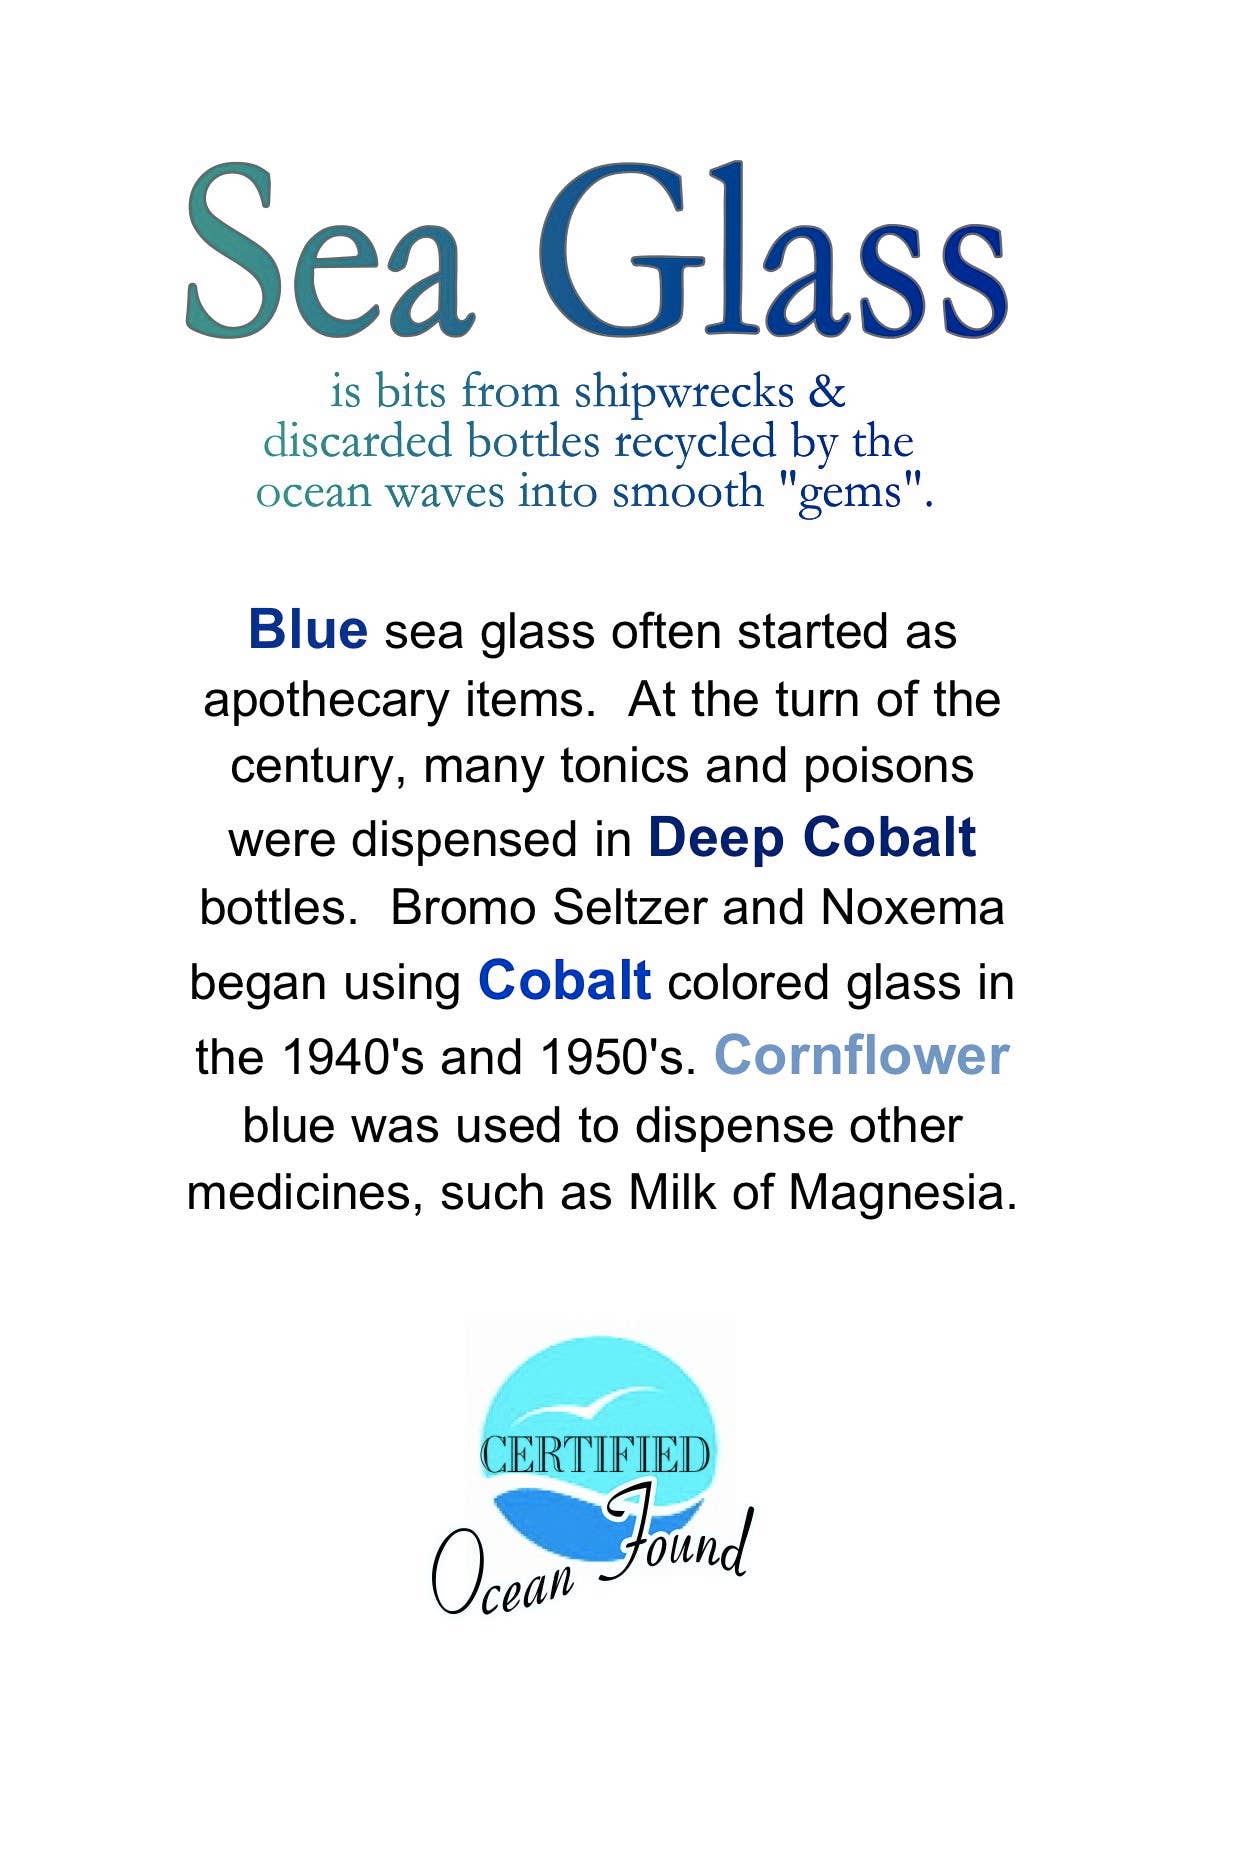 seaglass description